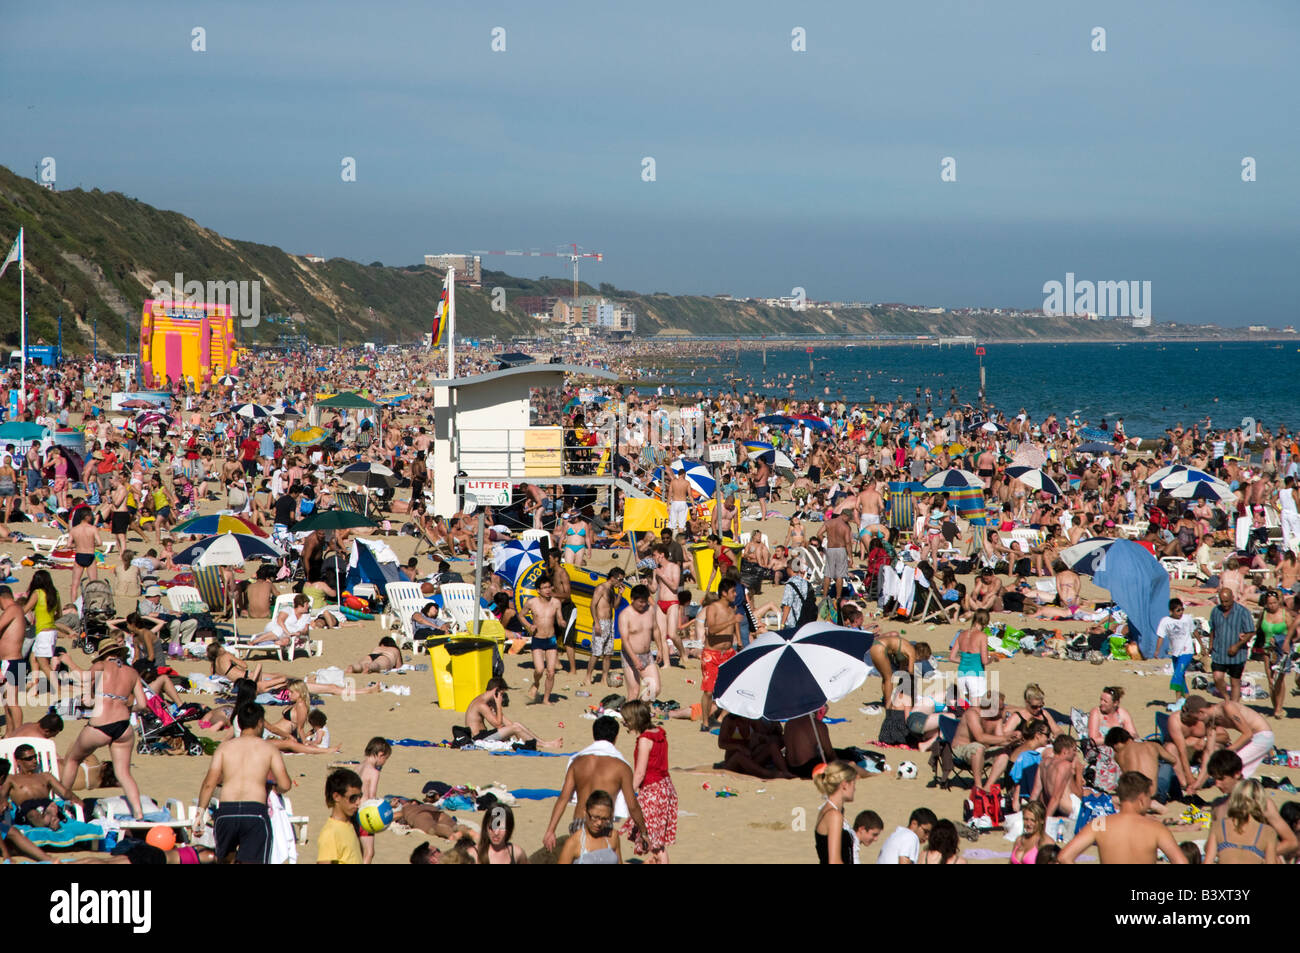 La plage de Bournemouth bondé, England, UK Banque D'Images